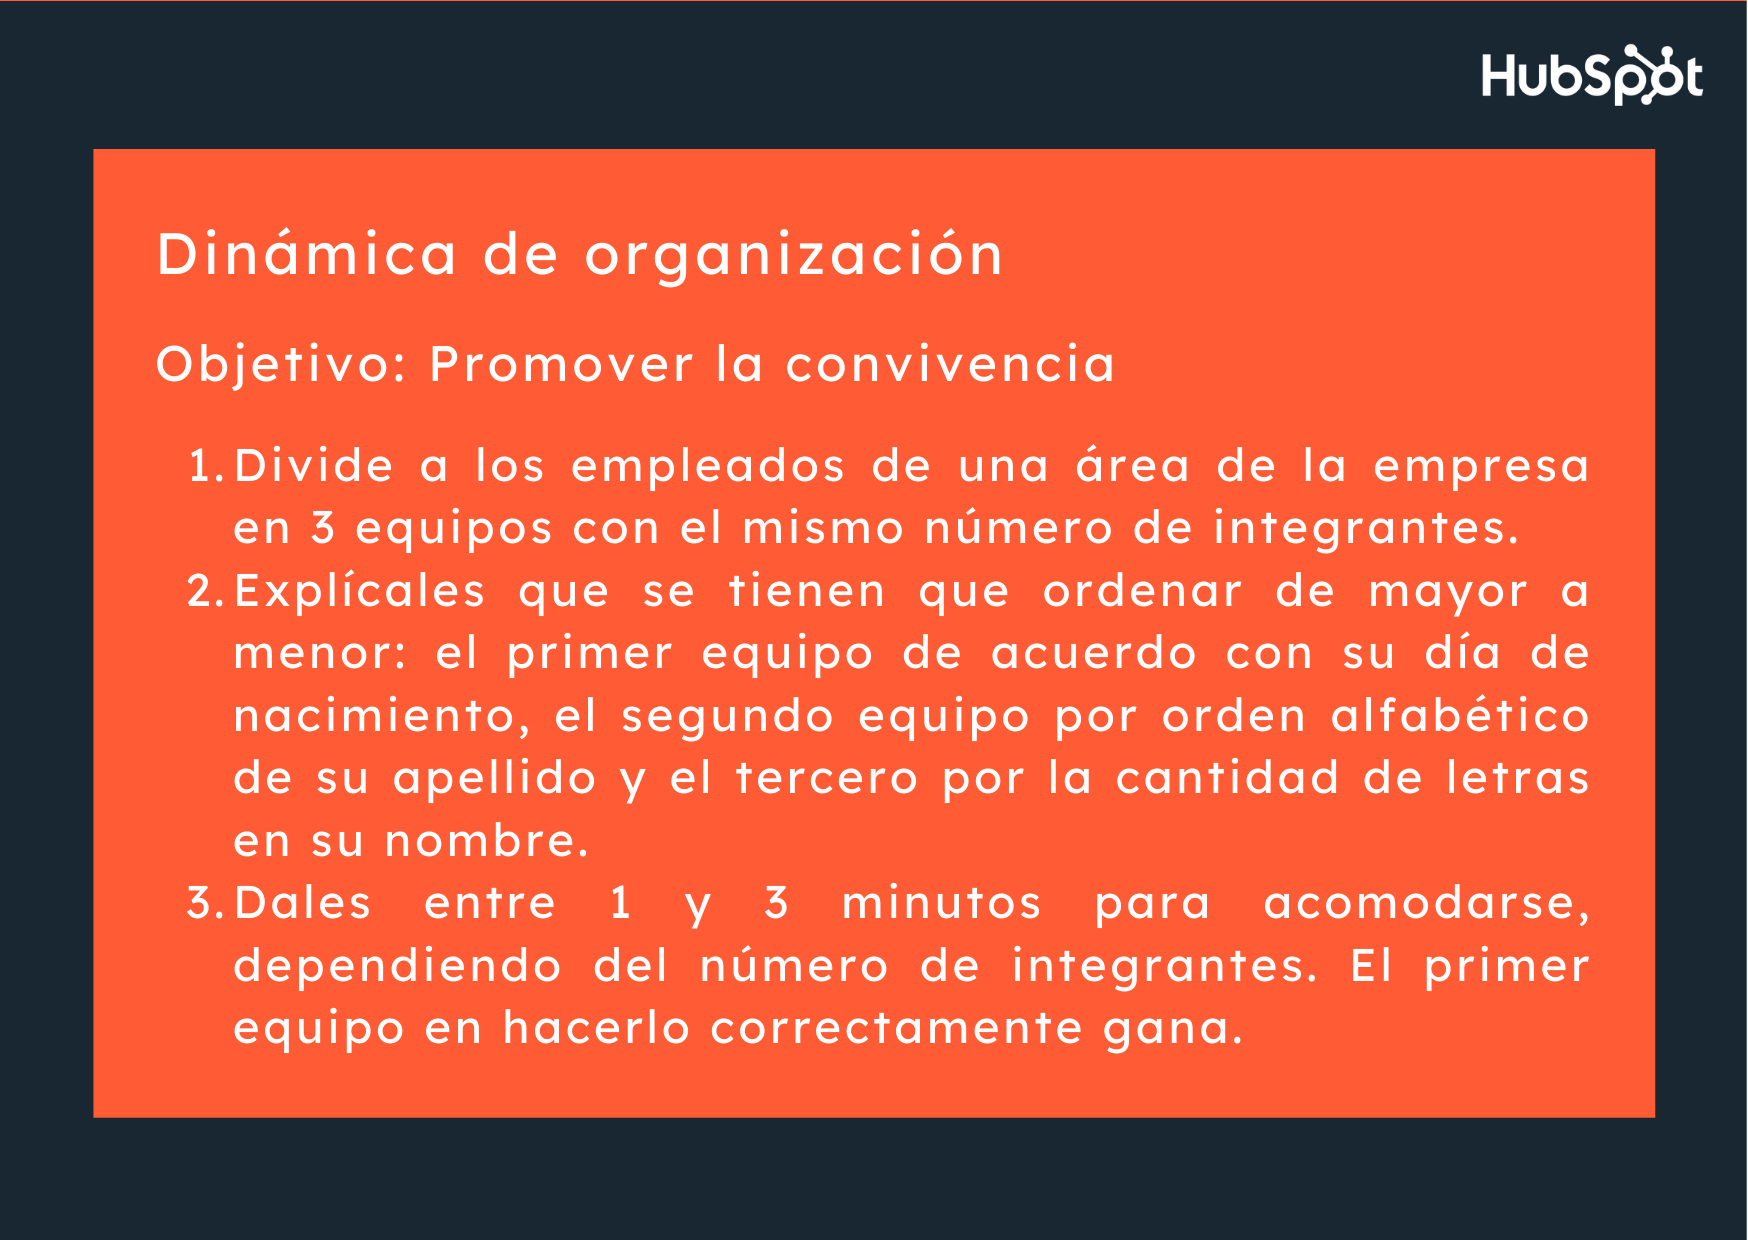 Dinámica de integración laboral con organización